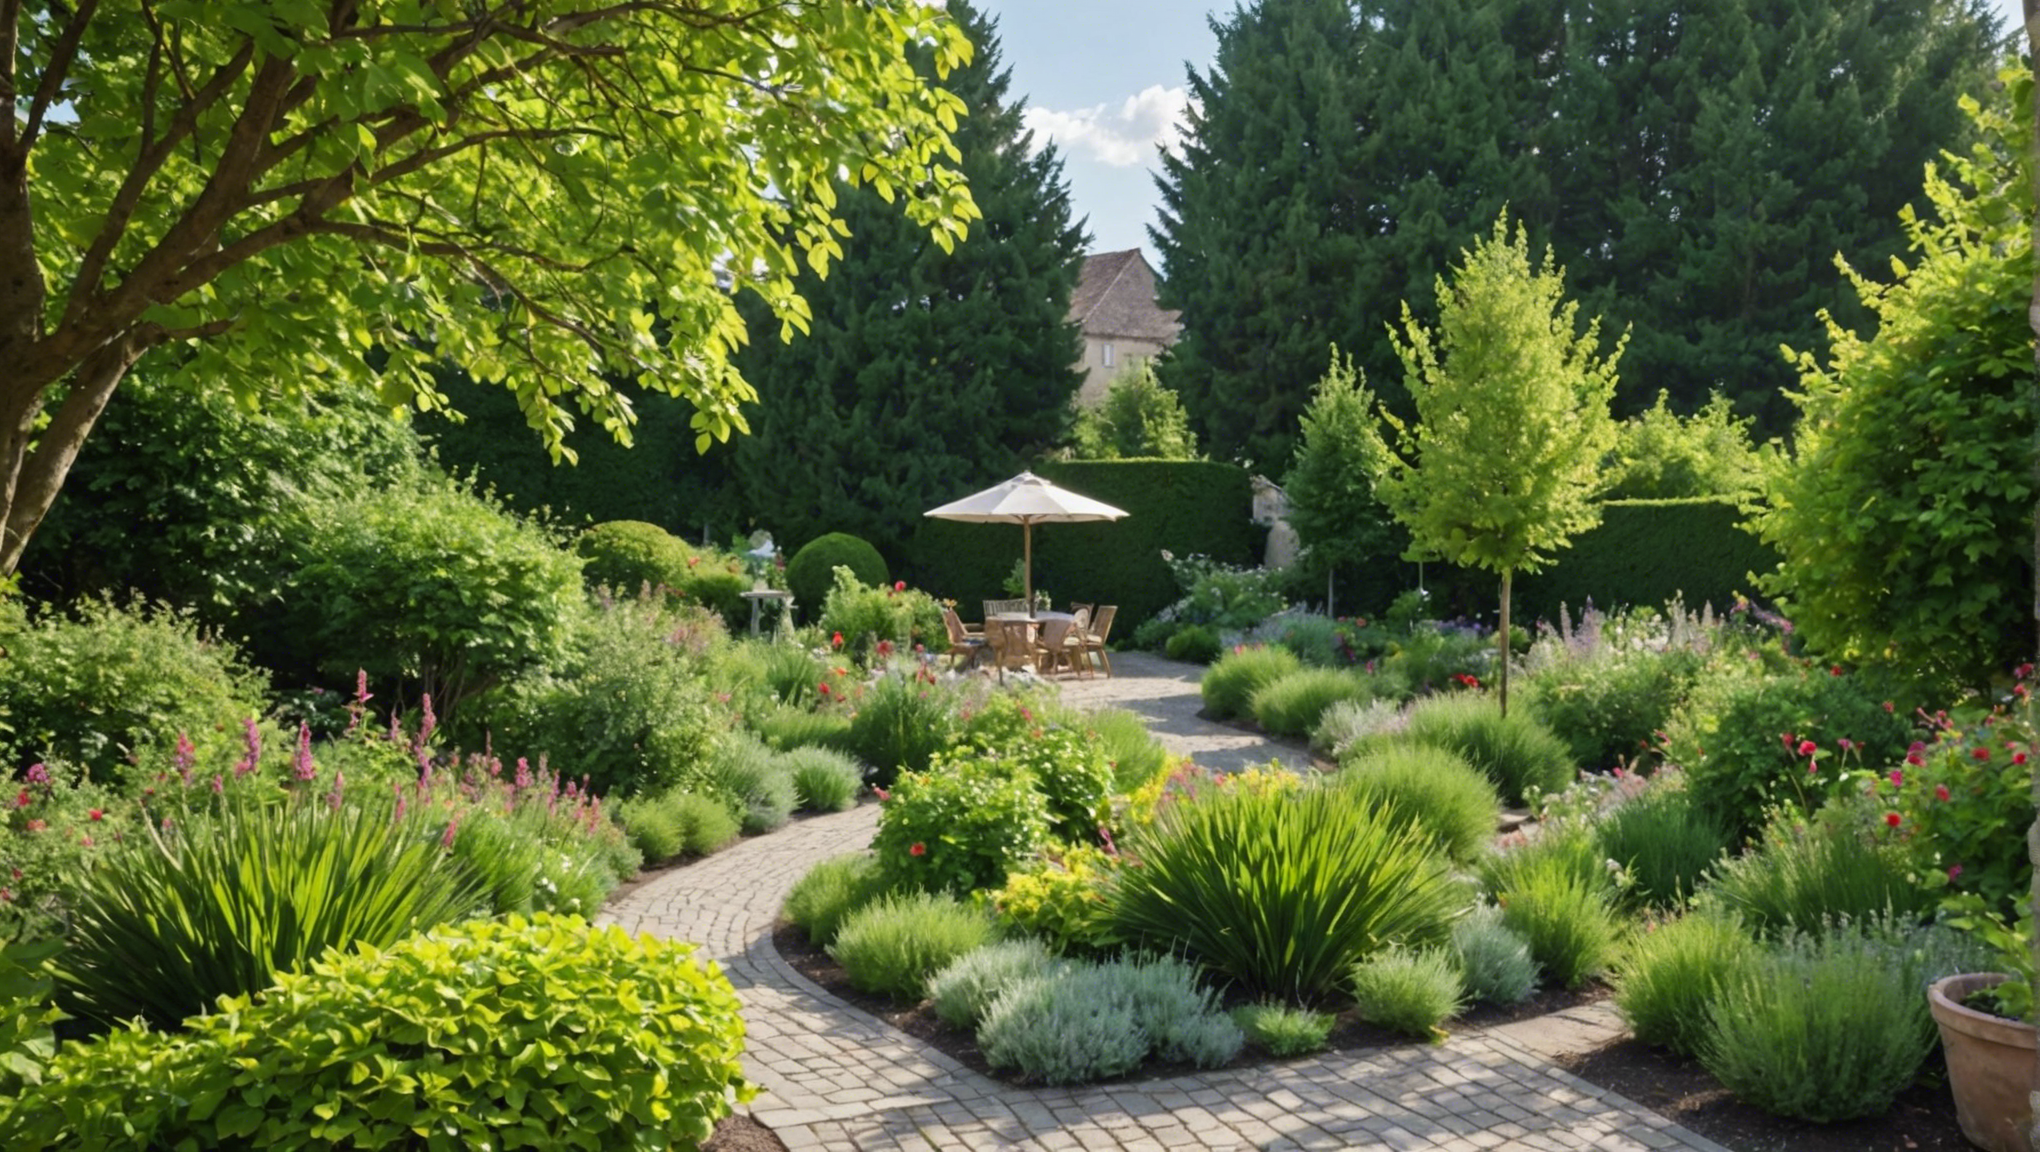 découvrez quel style de jardin choisir pour sublimer votre espace extérieur avec nos conseils et idées de design. trouvez l'inspiration pour créer un jardin qui vous ressemble et qui s'intègre harmonieusement à votre environnement.